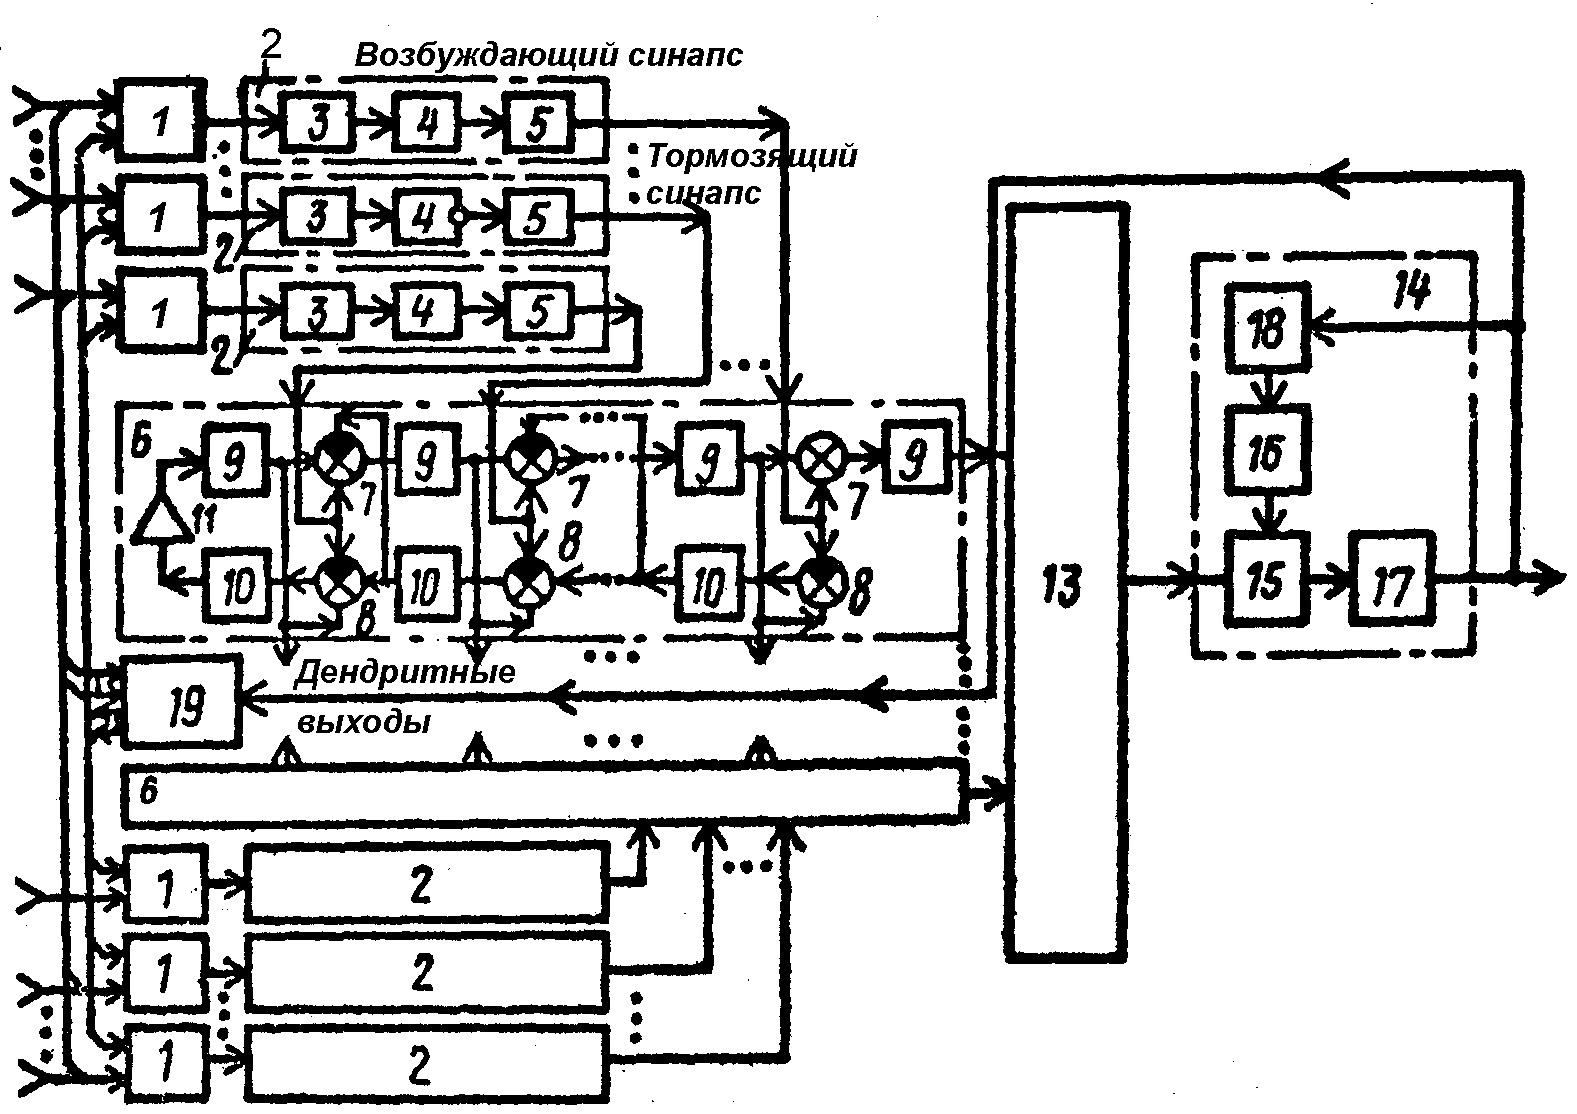  Рис. 5. Волновой нейропроцессор с локальными дендритными биопроцессорами по а. с. 1501101 [36].